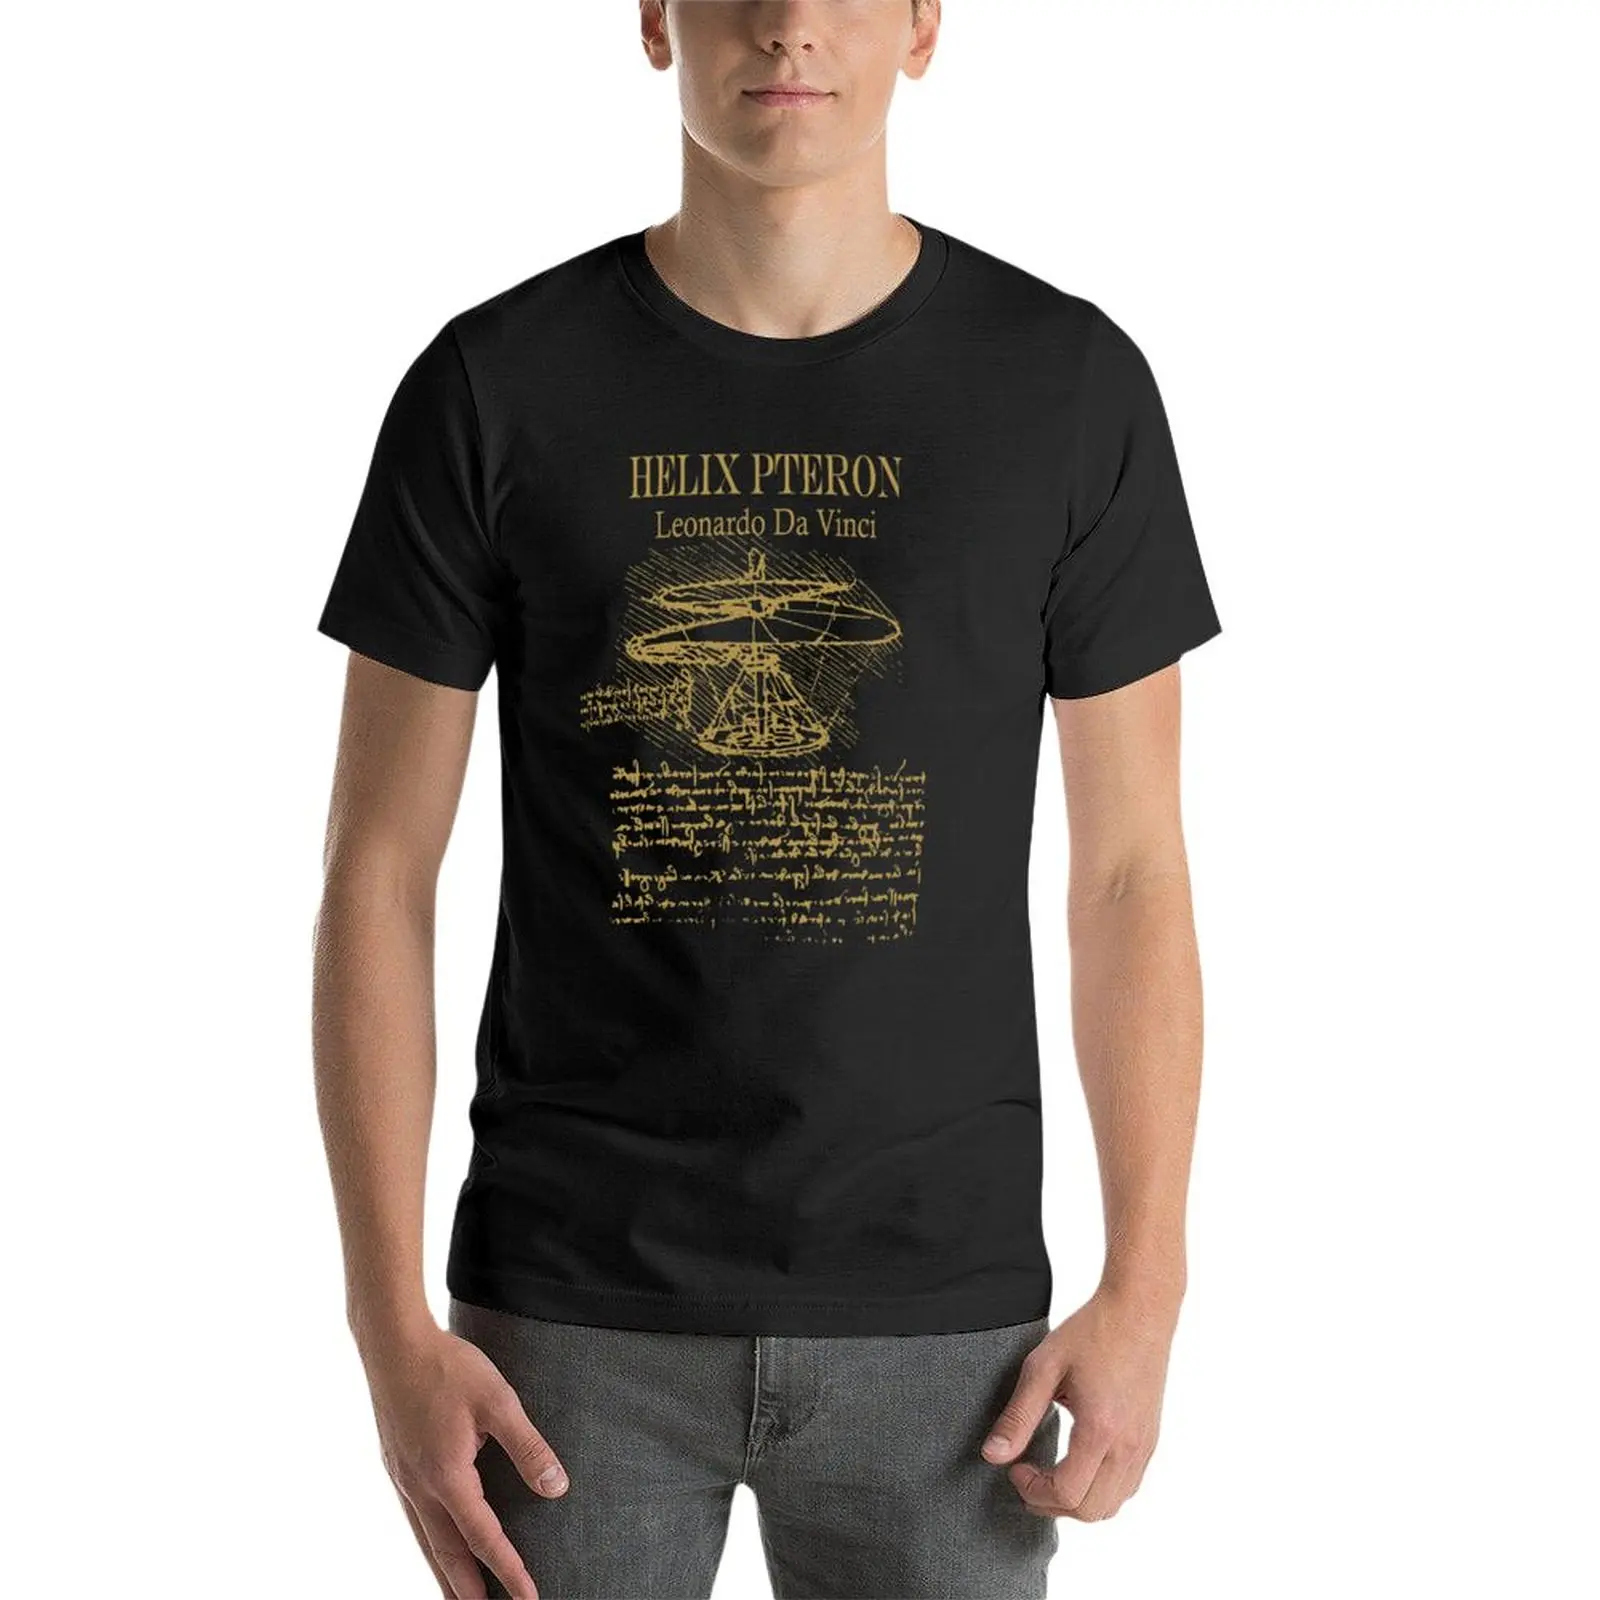 Новая футболка Leonardo da Vinci - Helix Pteron - Propeller - Helicopter, летние топы, футболки для мальчиков, мужские белые футболки Изображение 2